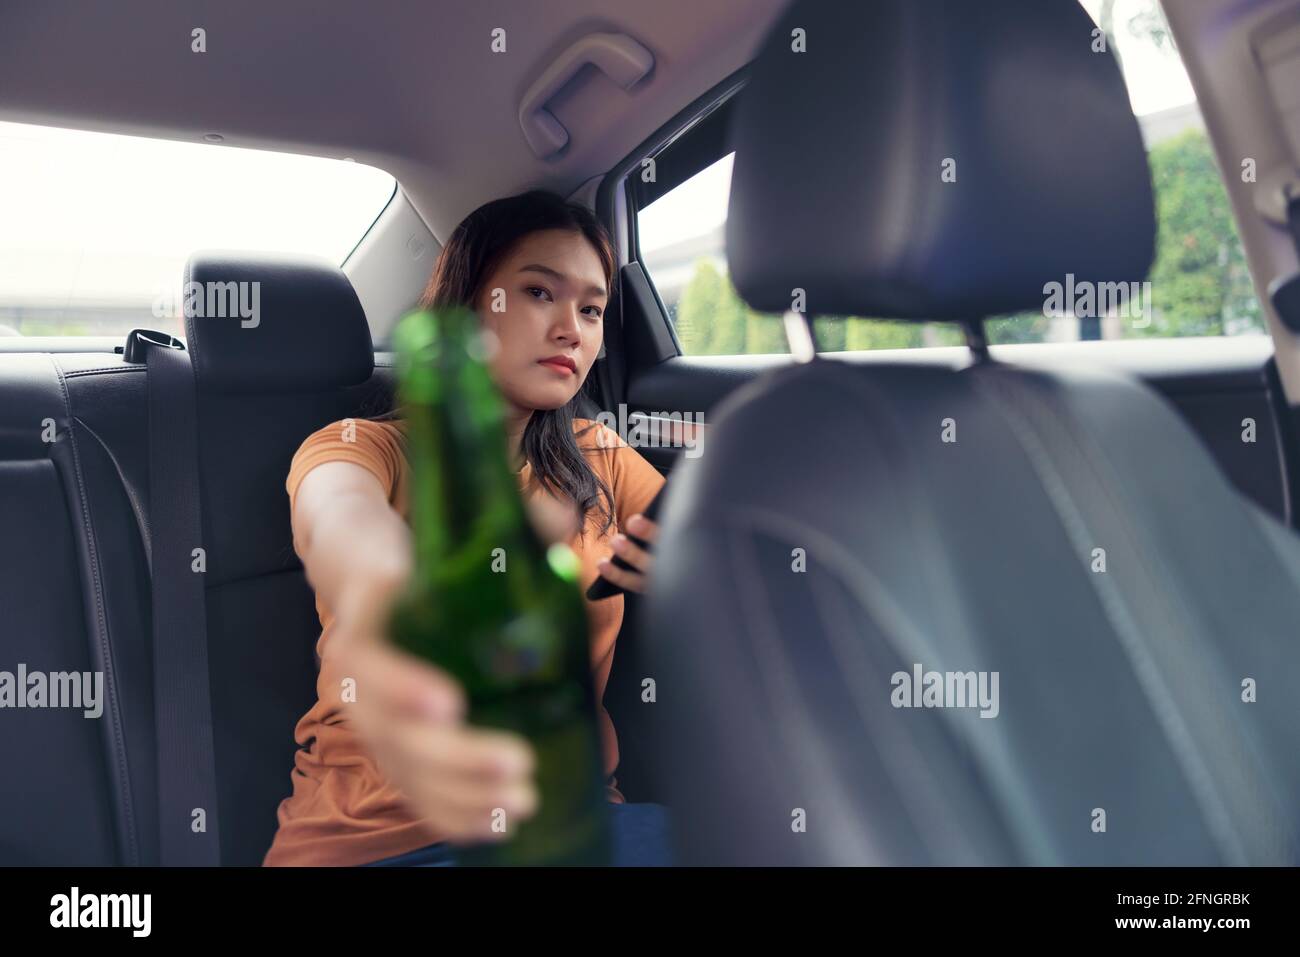 Boire une bière à la bouteille dans la voiture, filles boire de l'alcool Banque D'Images